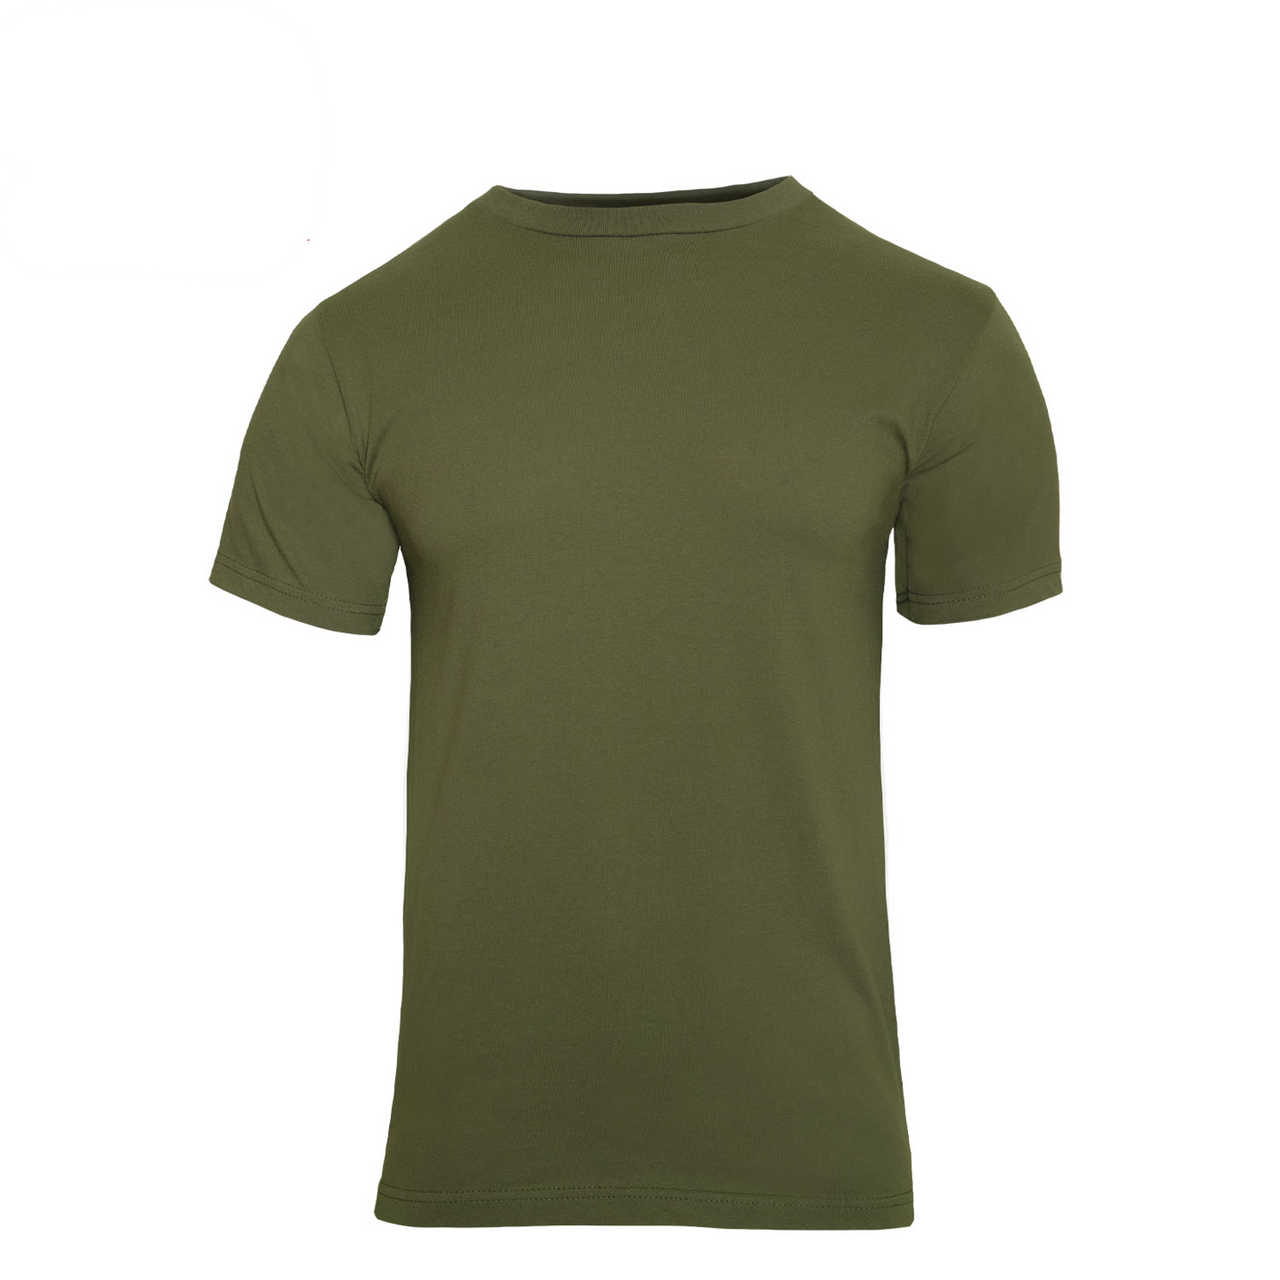 Plain Olive Drab T-Shirt